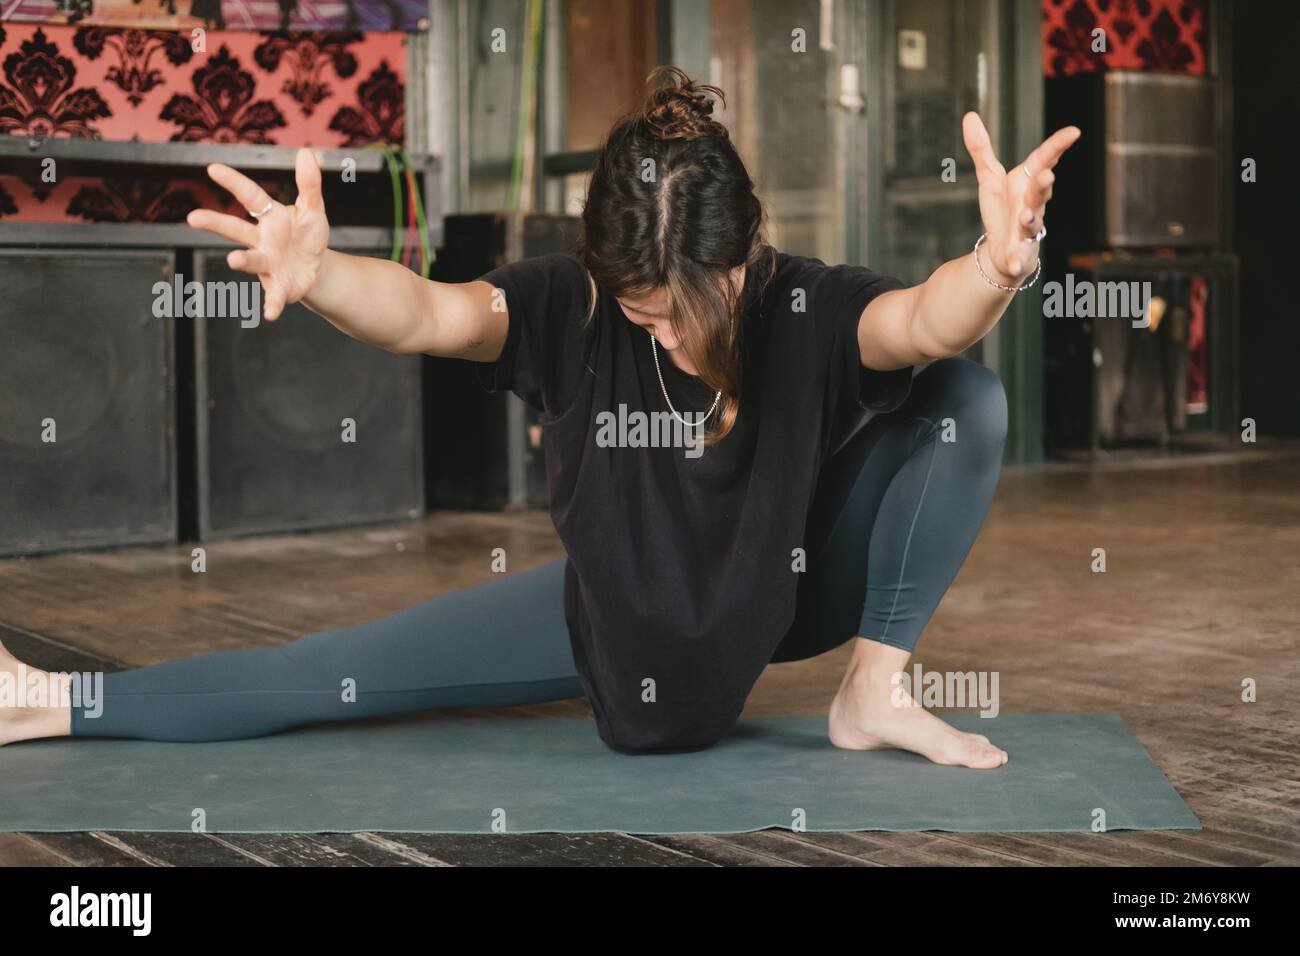 Femme yogi nouvelle enseignante jeune adulte équilibrant une posture de skandasana se prolongeant et tenant ses bras dans l'air avec des leggings verts pendant son entraînement de yoga Banque D'Images